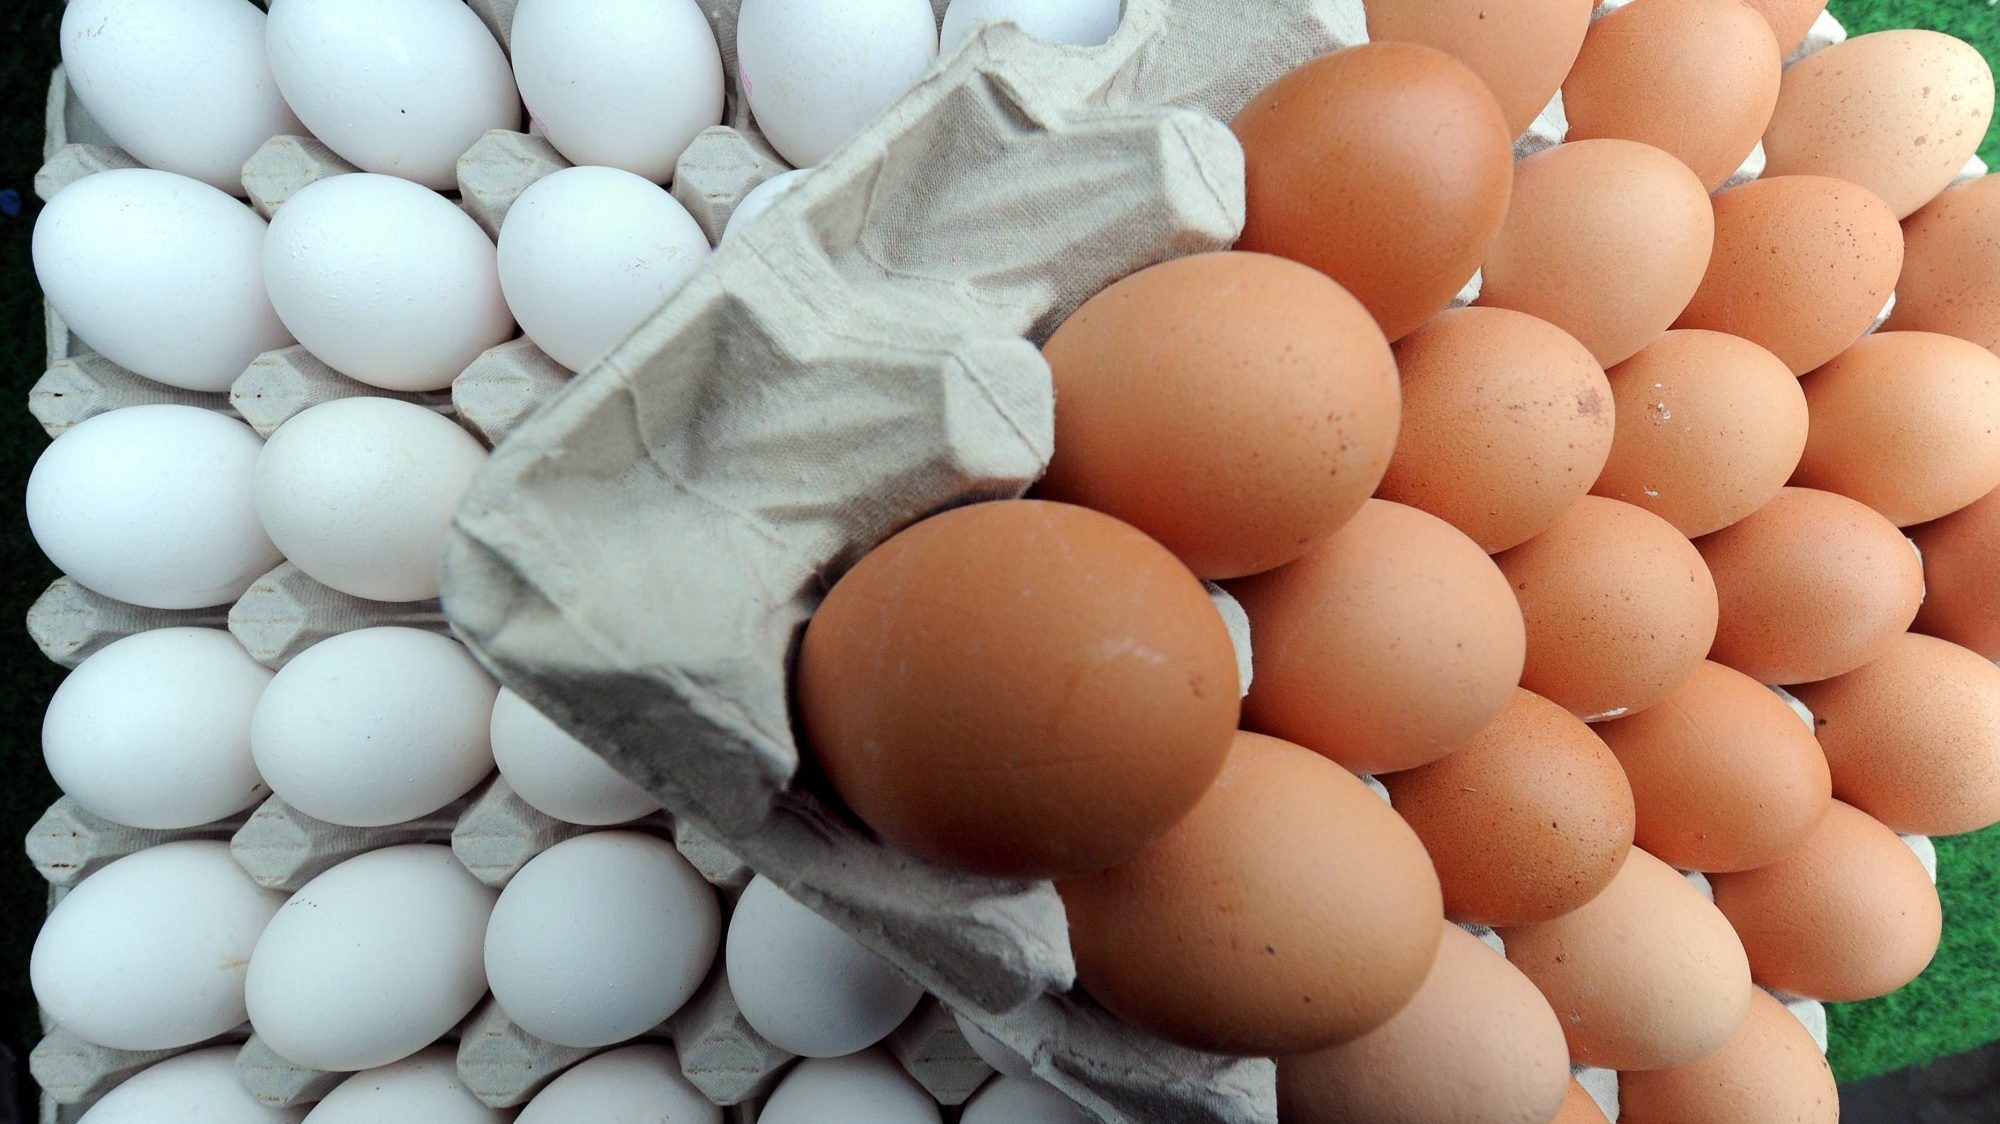 Devido a preocupações com a superprodução de ovos na Noruega, os agricultores acabaram por receber uma compensação para reduzir a produção, fator que, associado aos efeitos da gripe aviária, levou à escassez, segundo reportagens da imprensa local